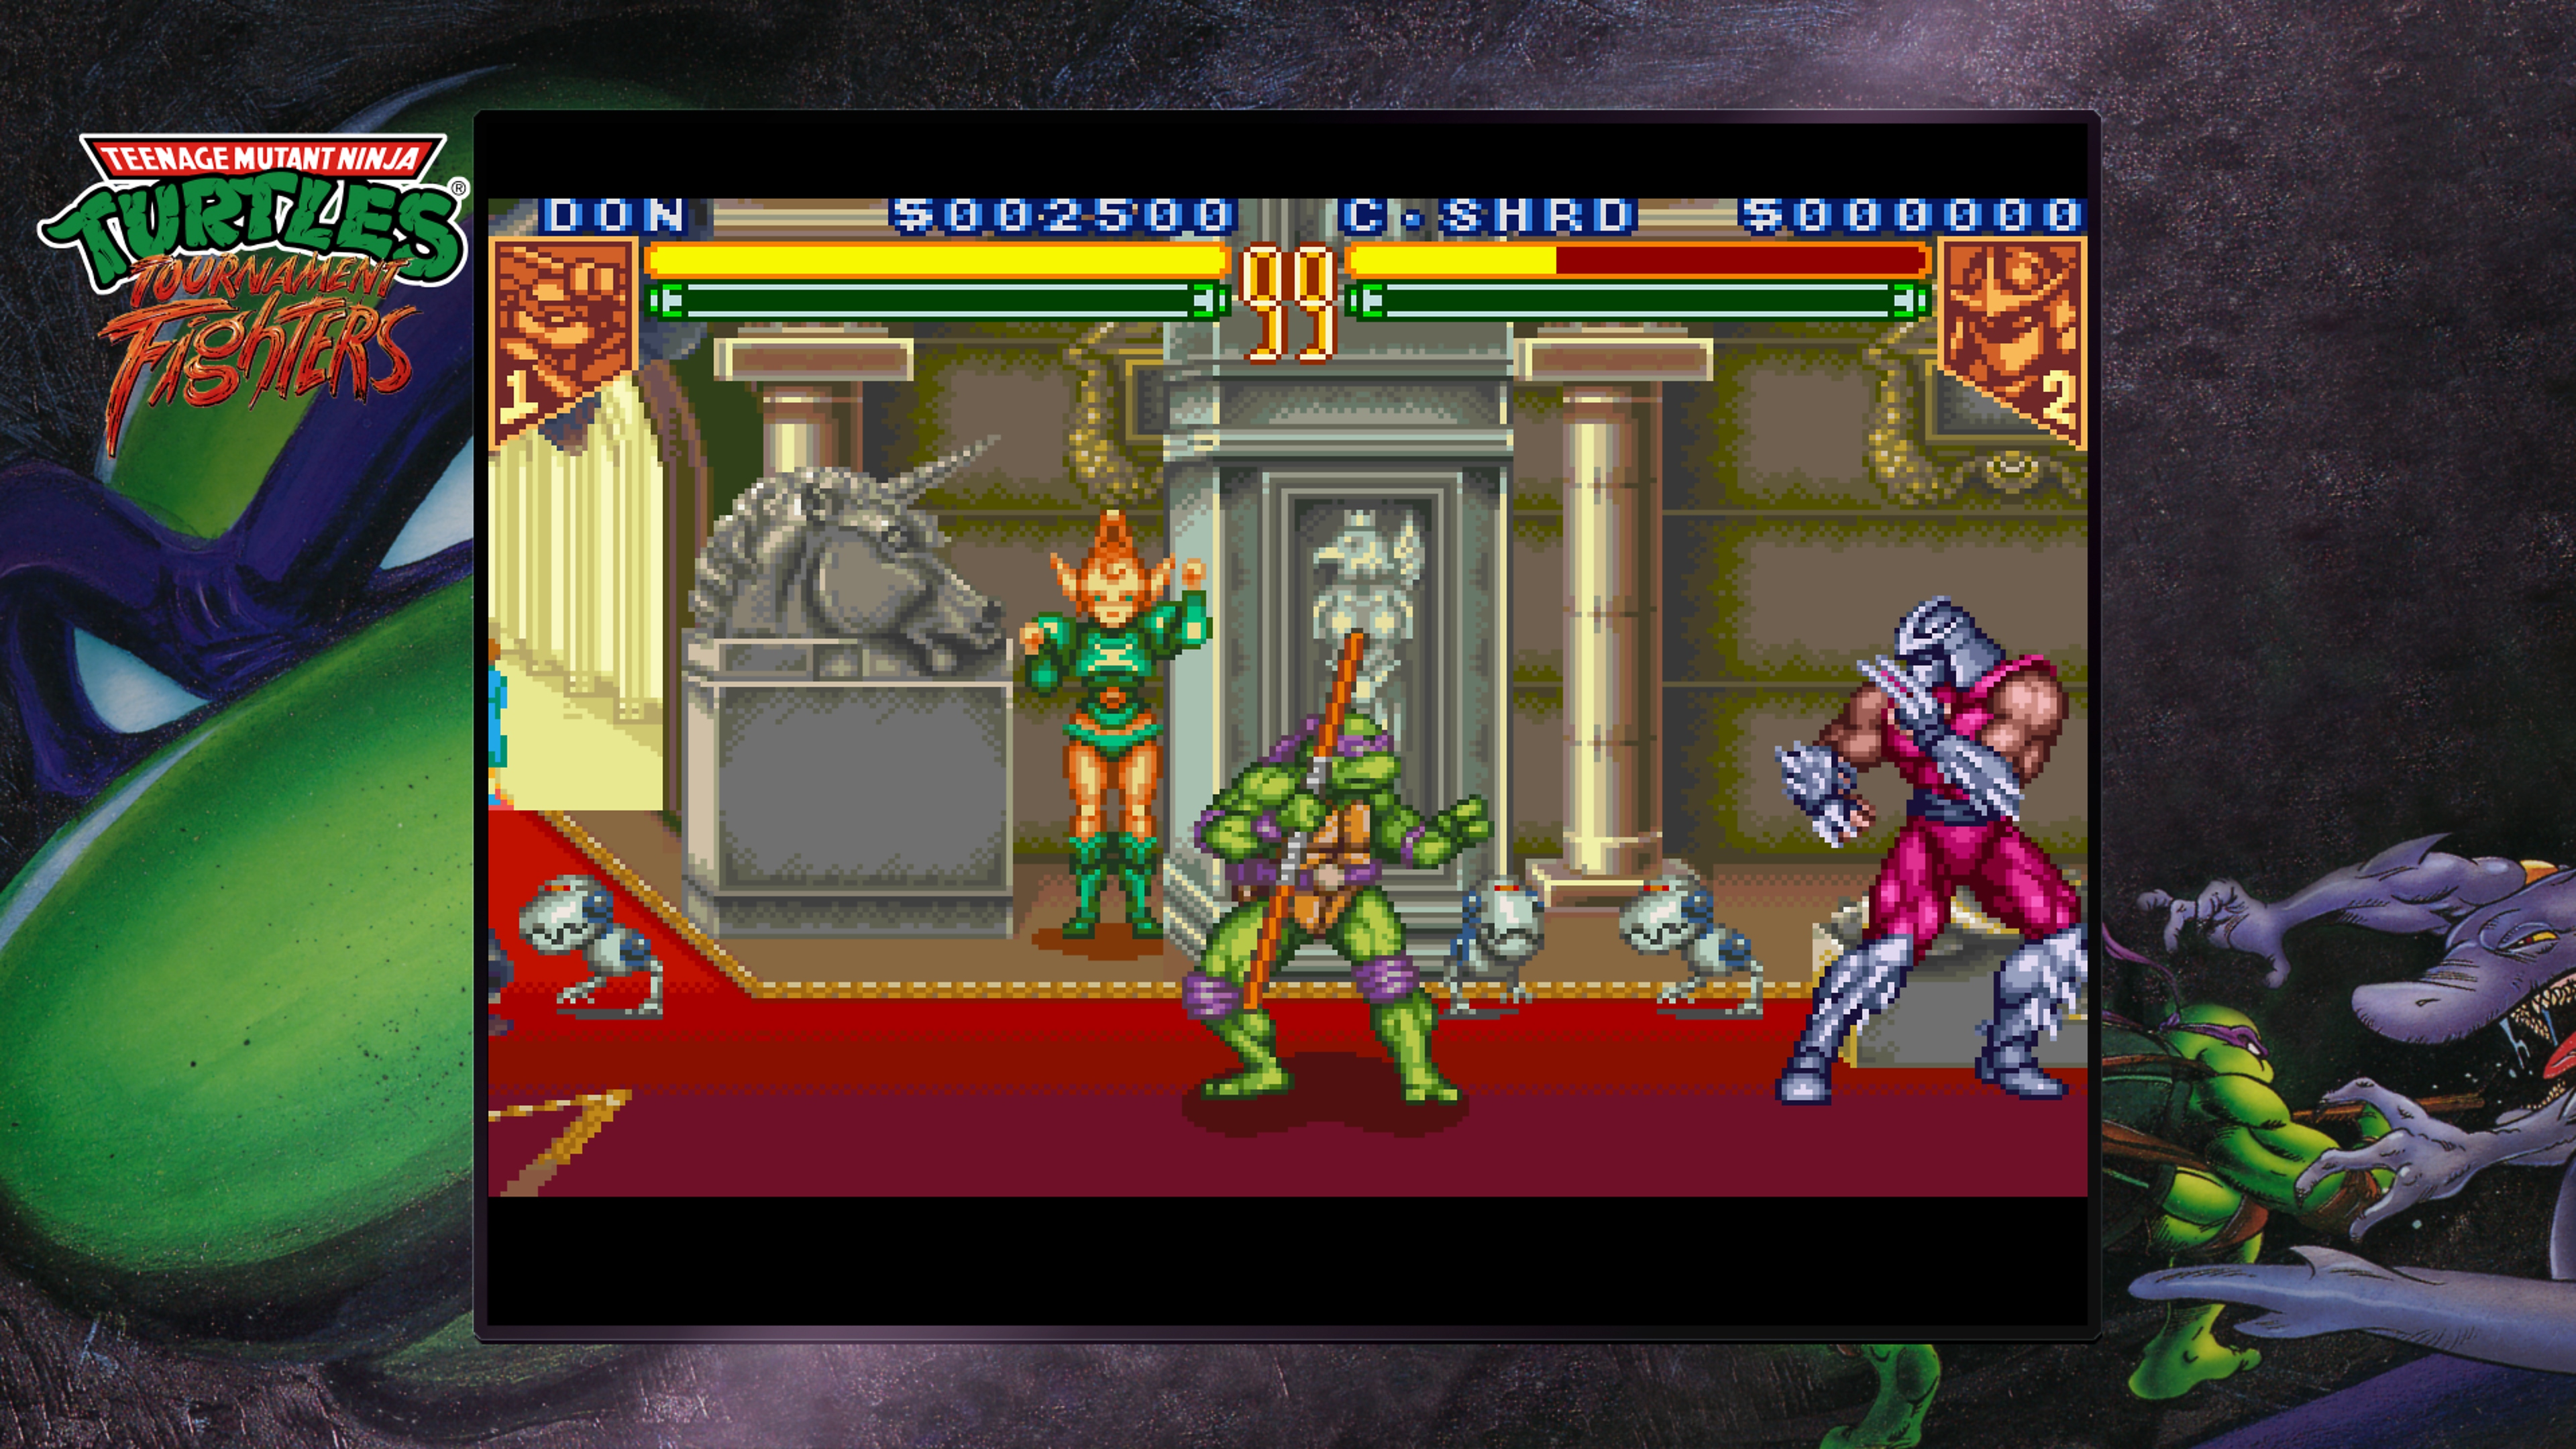 Teenage Mutant Ninja Turtles Collection – Tournament Fighters – skjermbilde som viser Donatelle kjempe mot Shredder